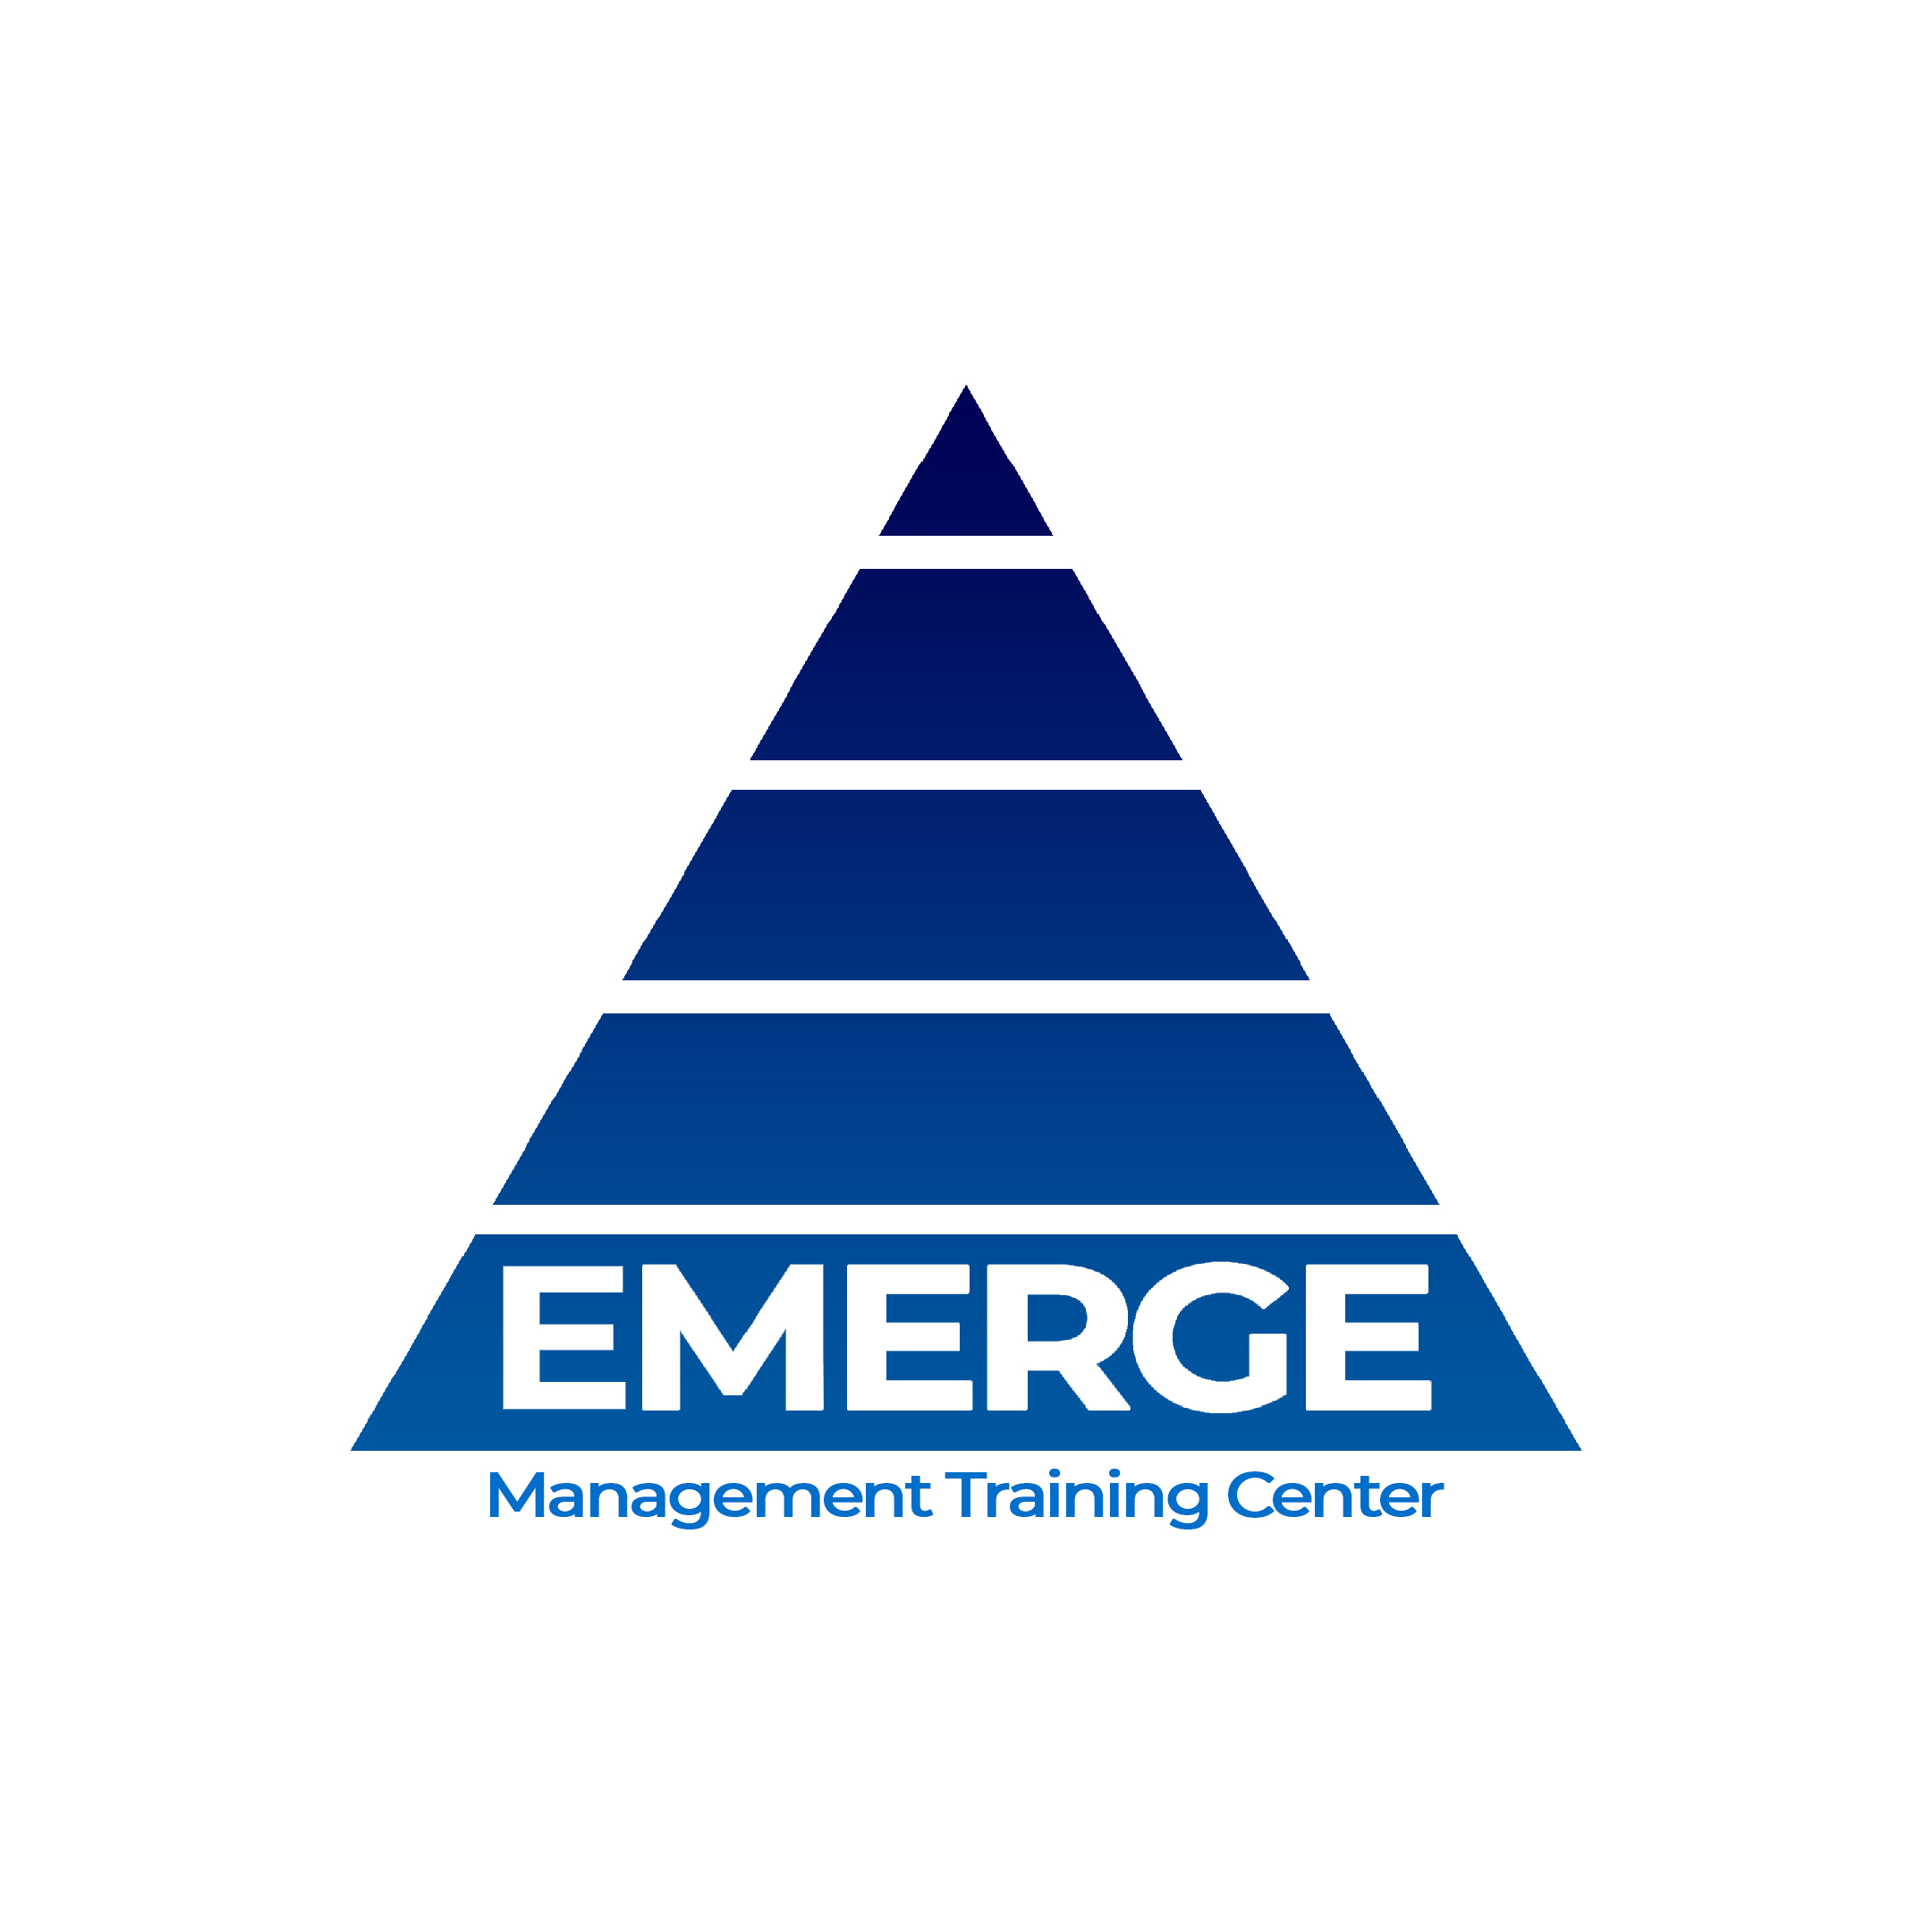 EMERGE Management Training Center Logo